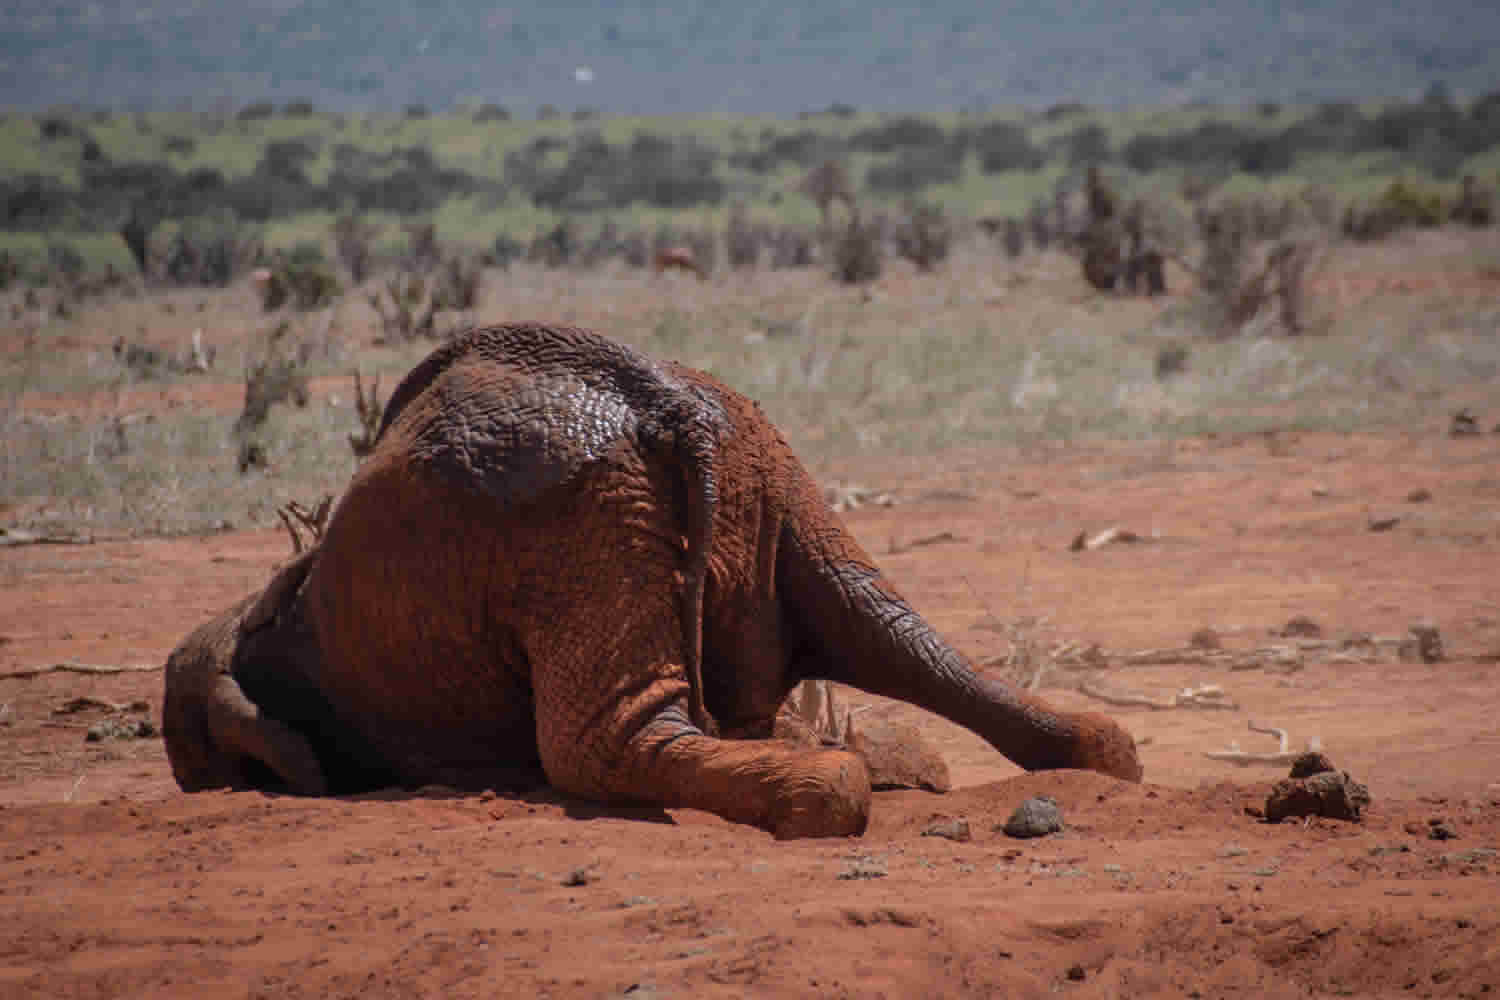 Elephant Dust Bathing